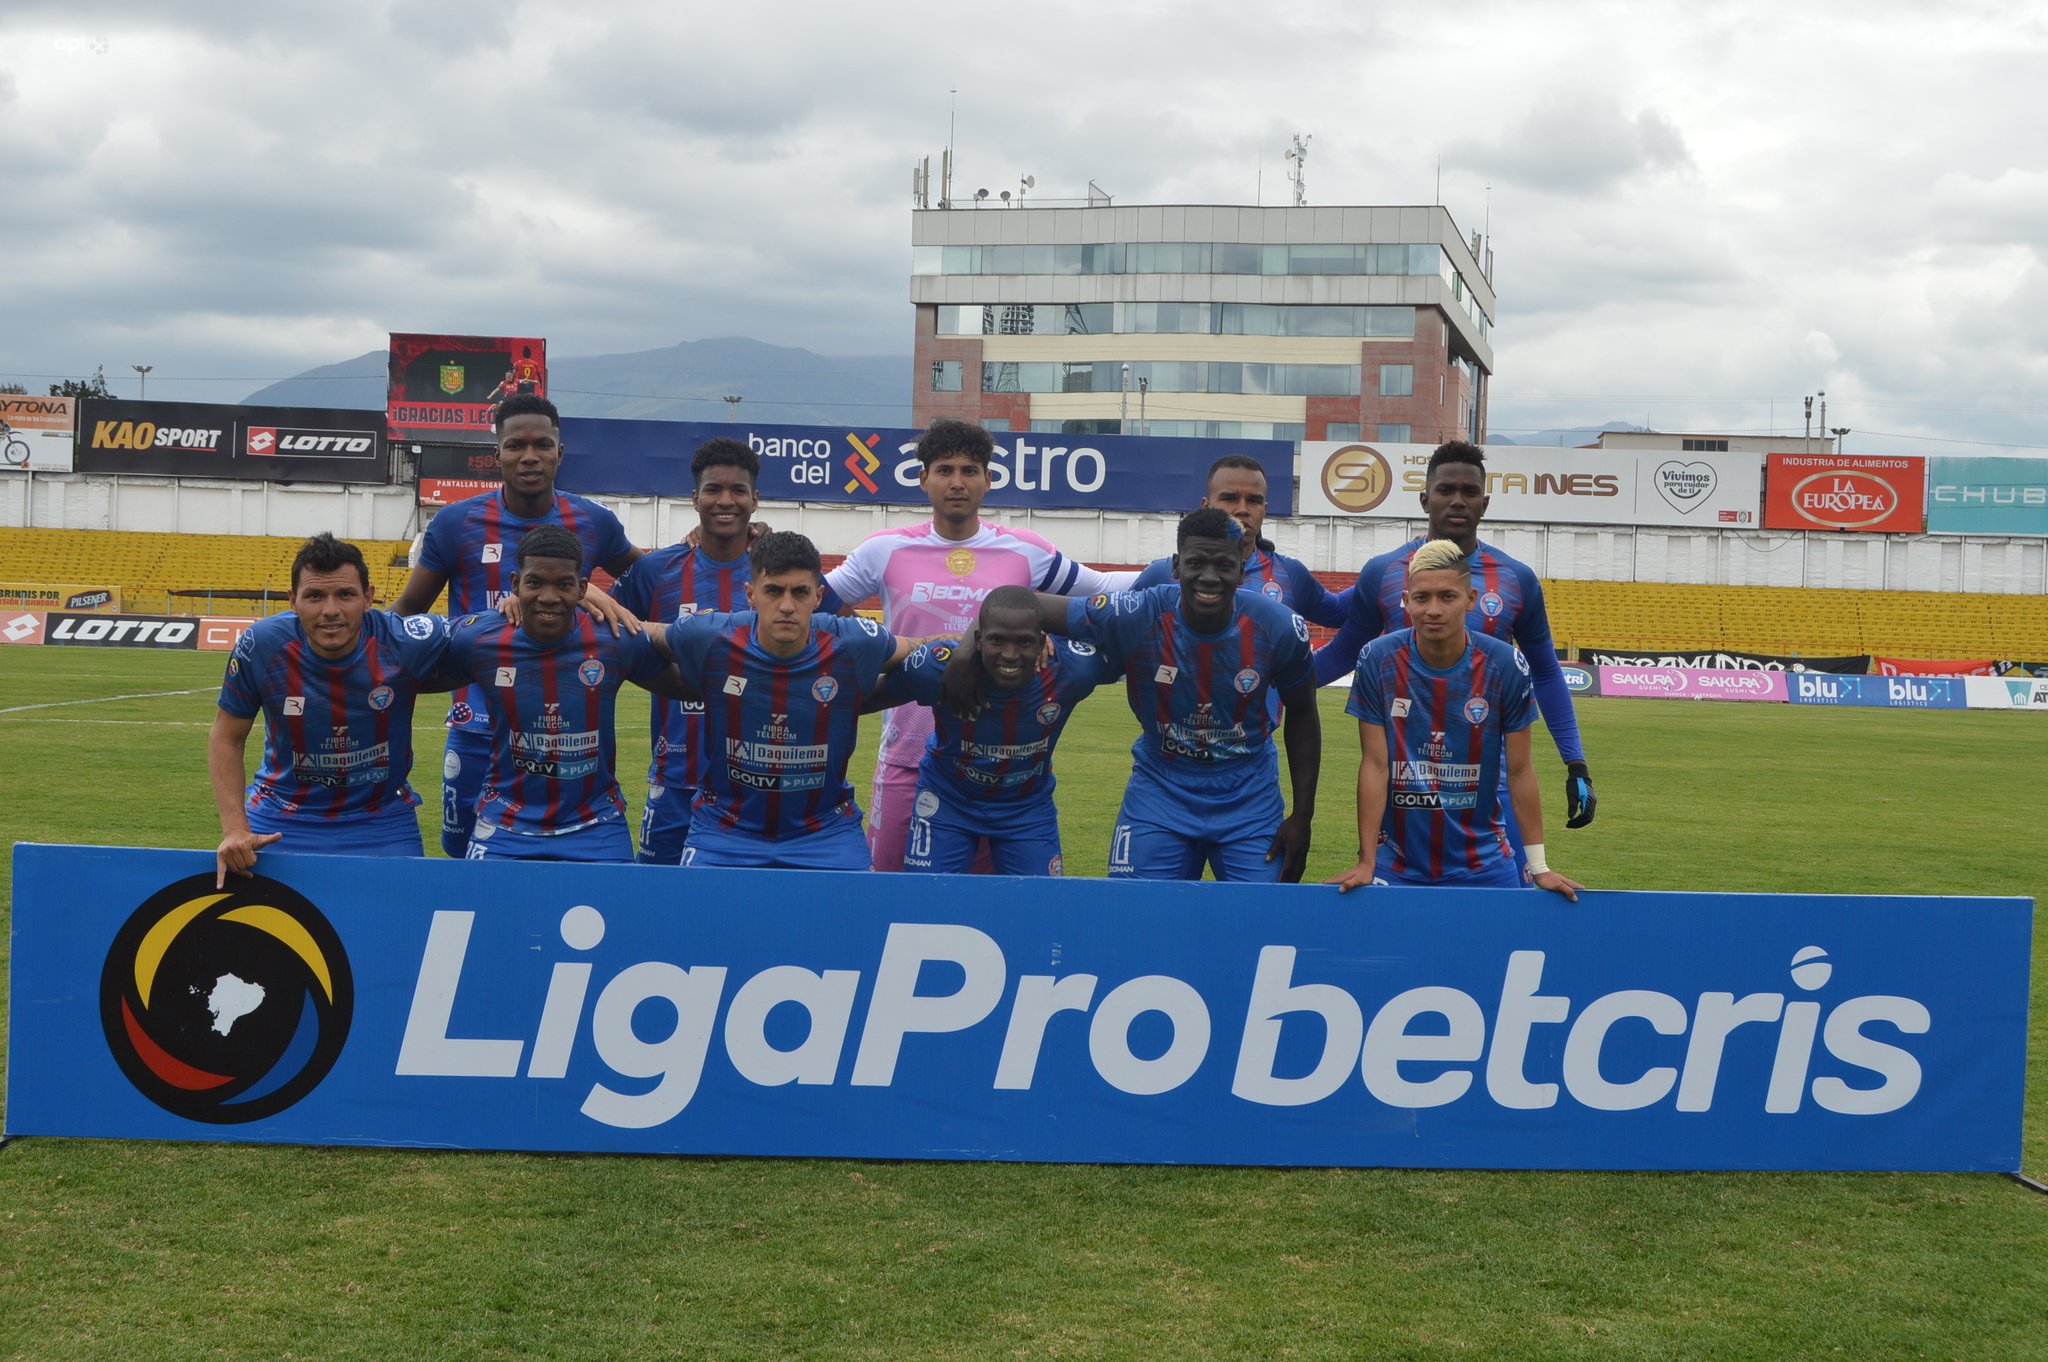 Los jugadores del Olmedo posan para la prensa gráfica en uno de los partidos de la Serie A del 2021. Foto: Riobamba digital